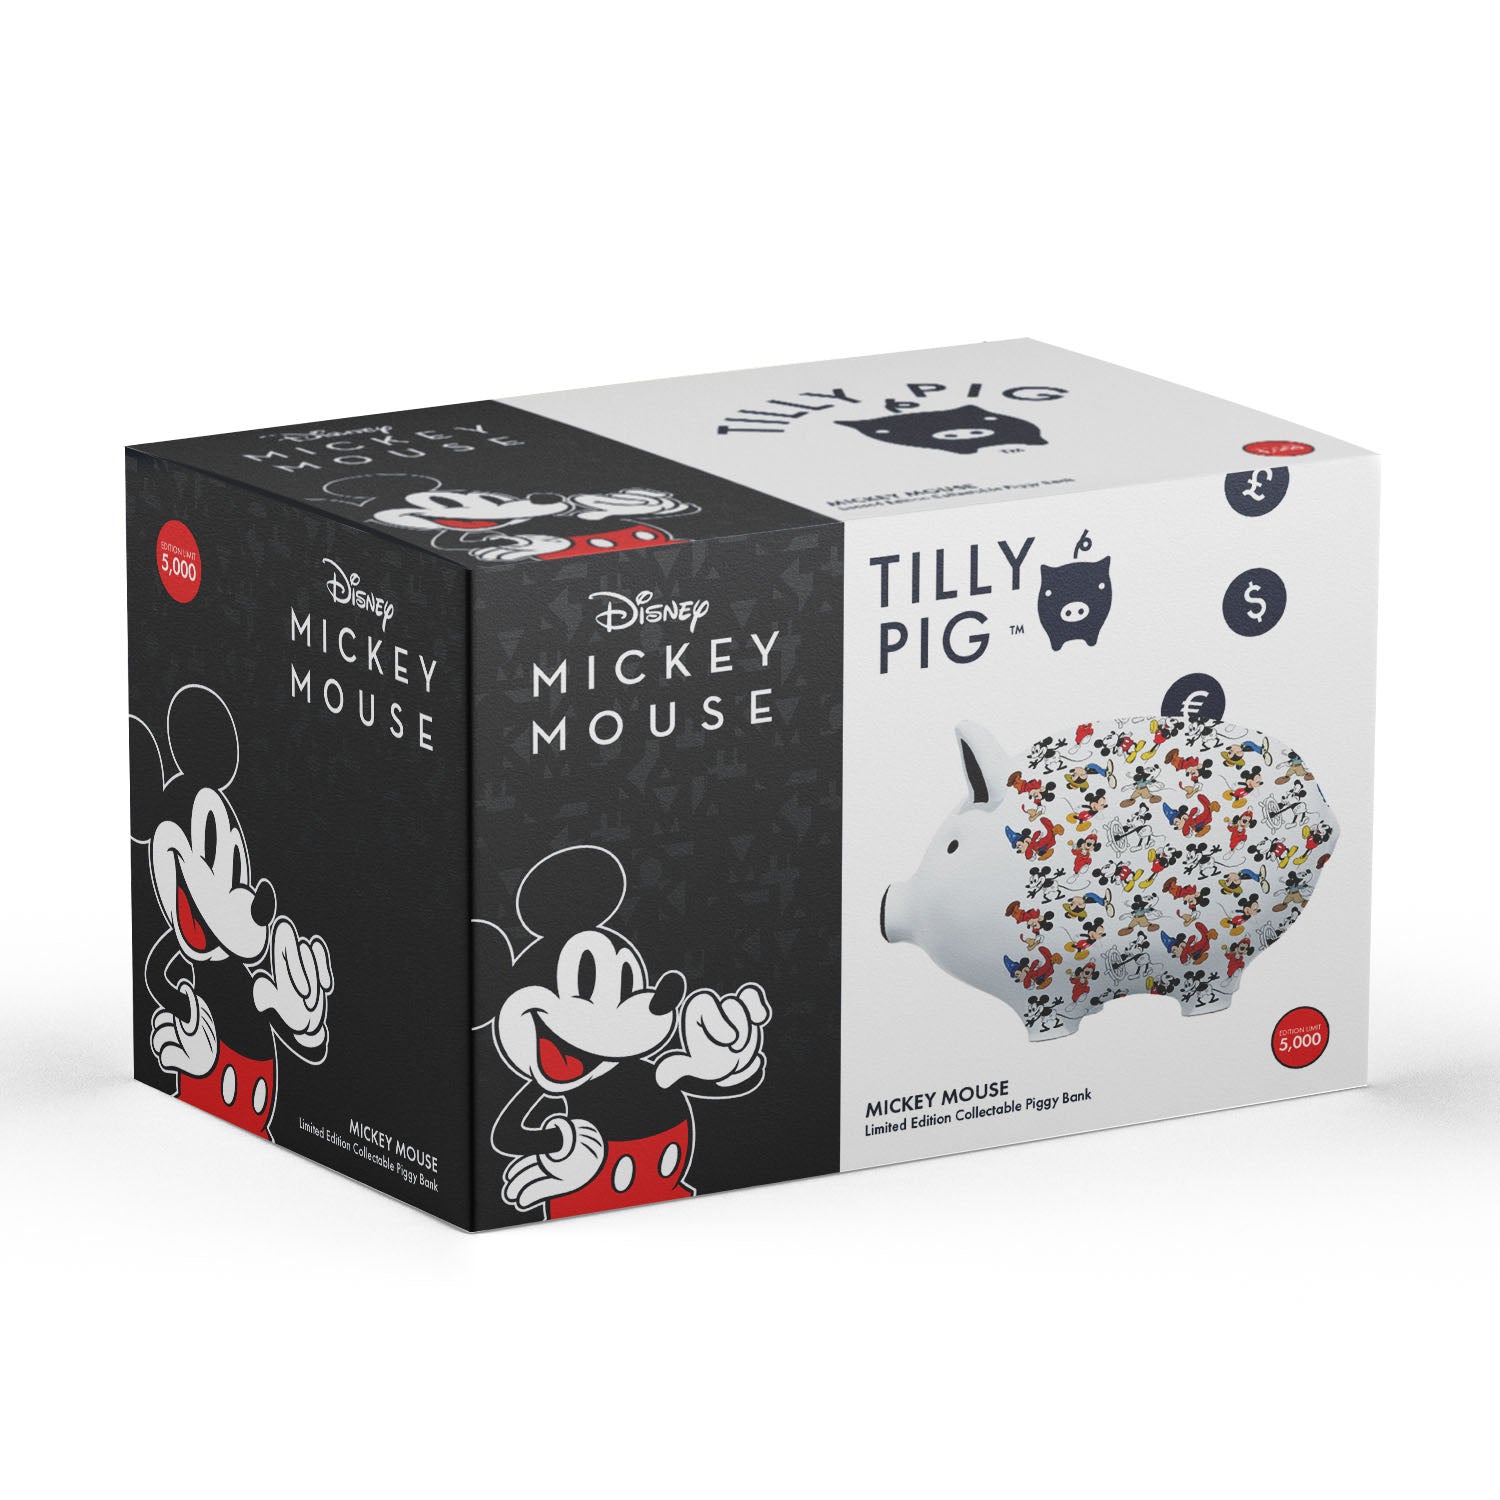 ティリーピッグ - ディズニーミッキーマウス貯金箱